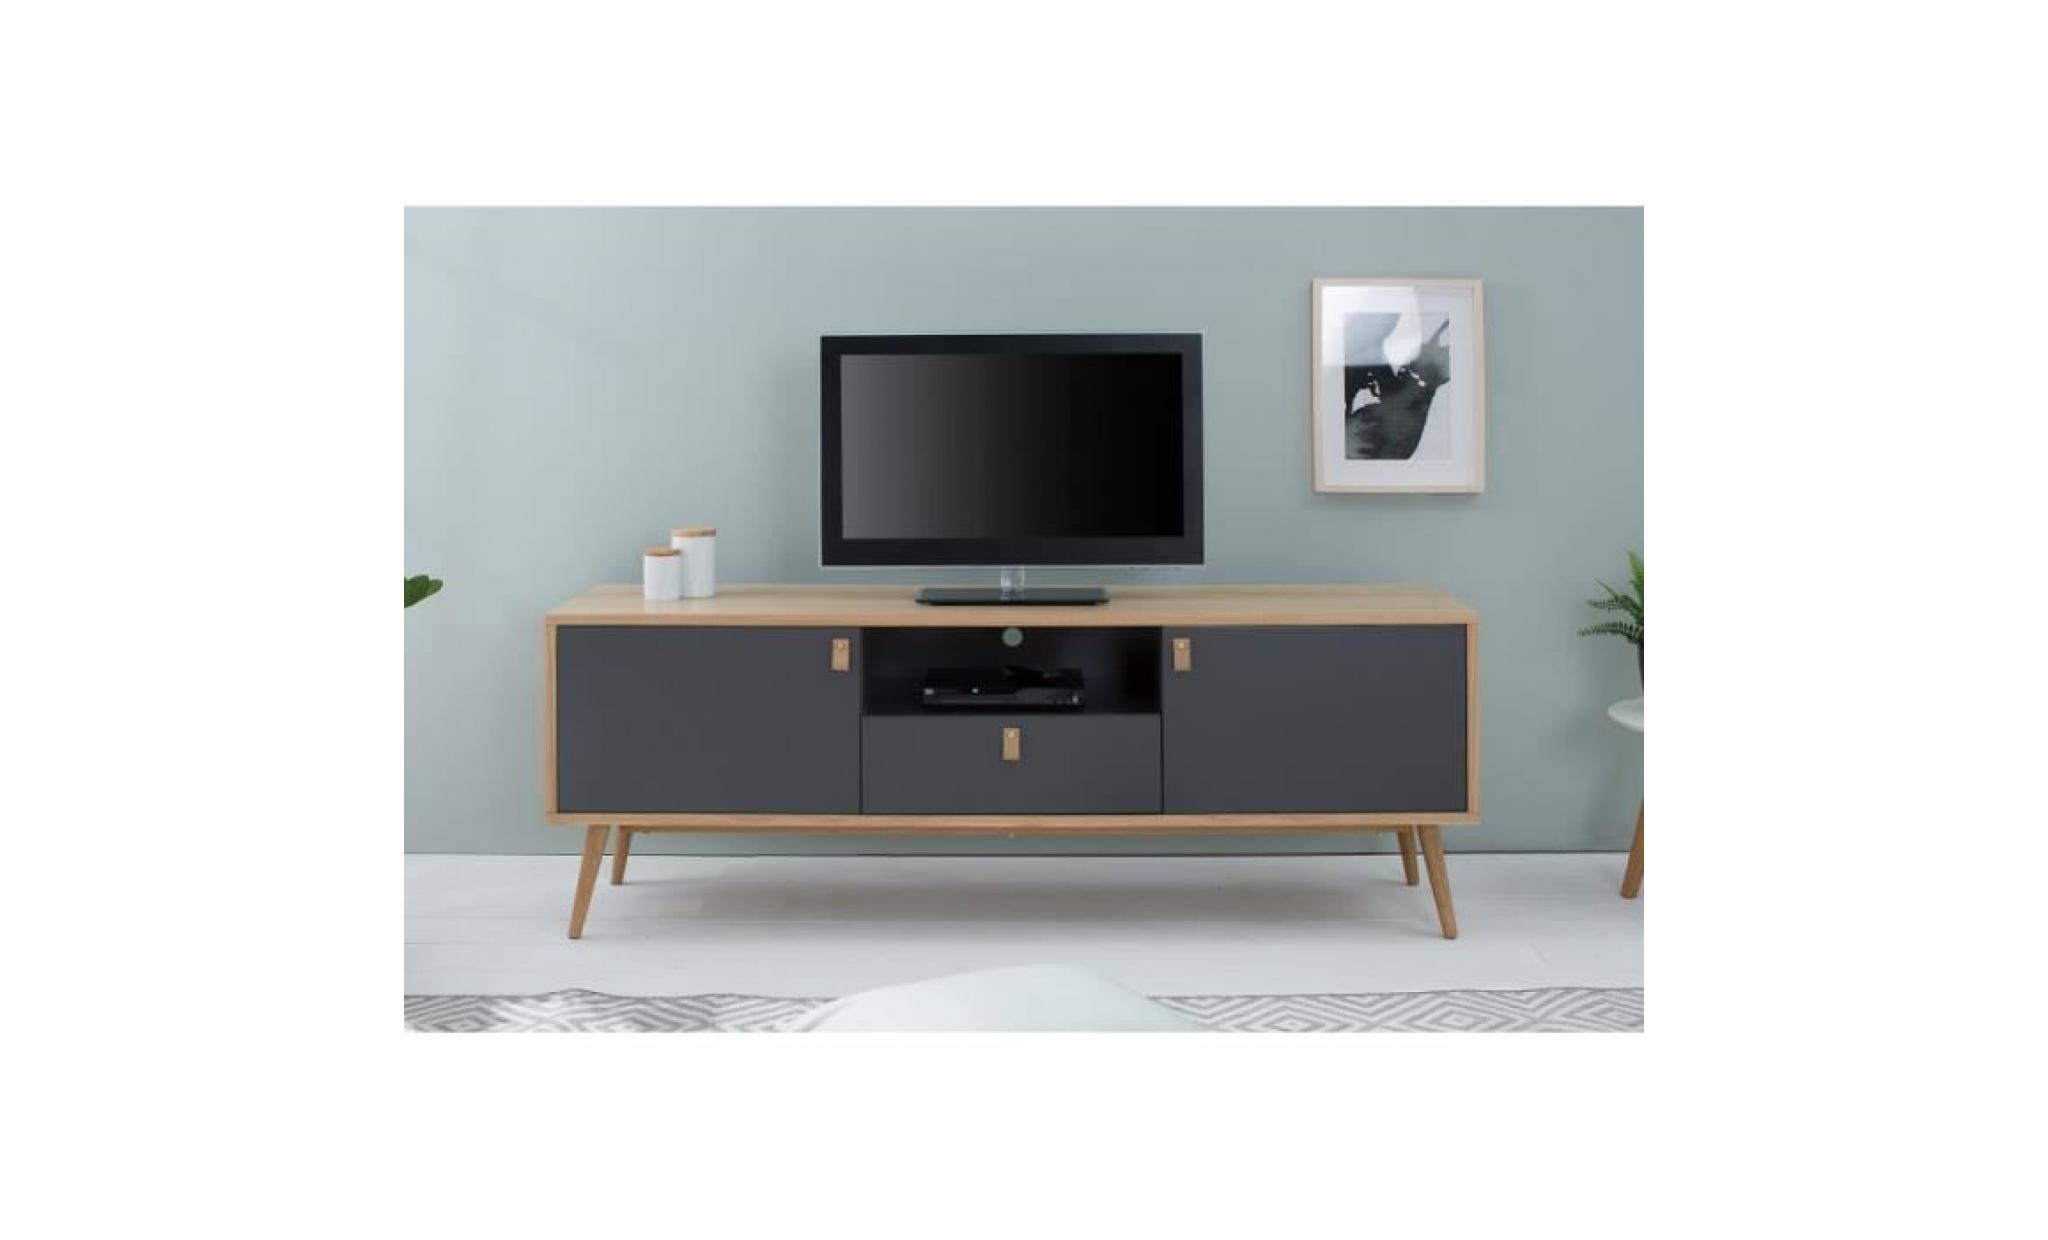 casa padrino designer meuble tv   buffet 150cm x 40cm x h.55cm   console   meubles d'hôtel pas cher